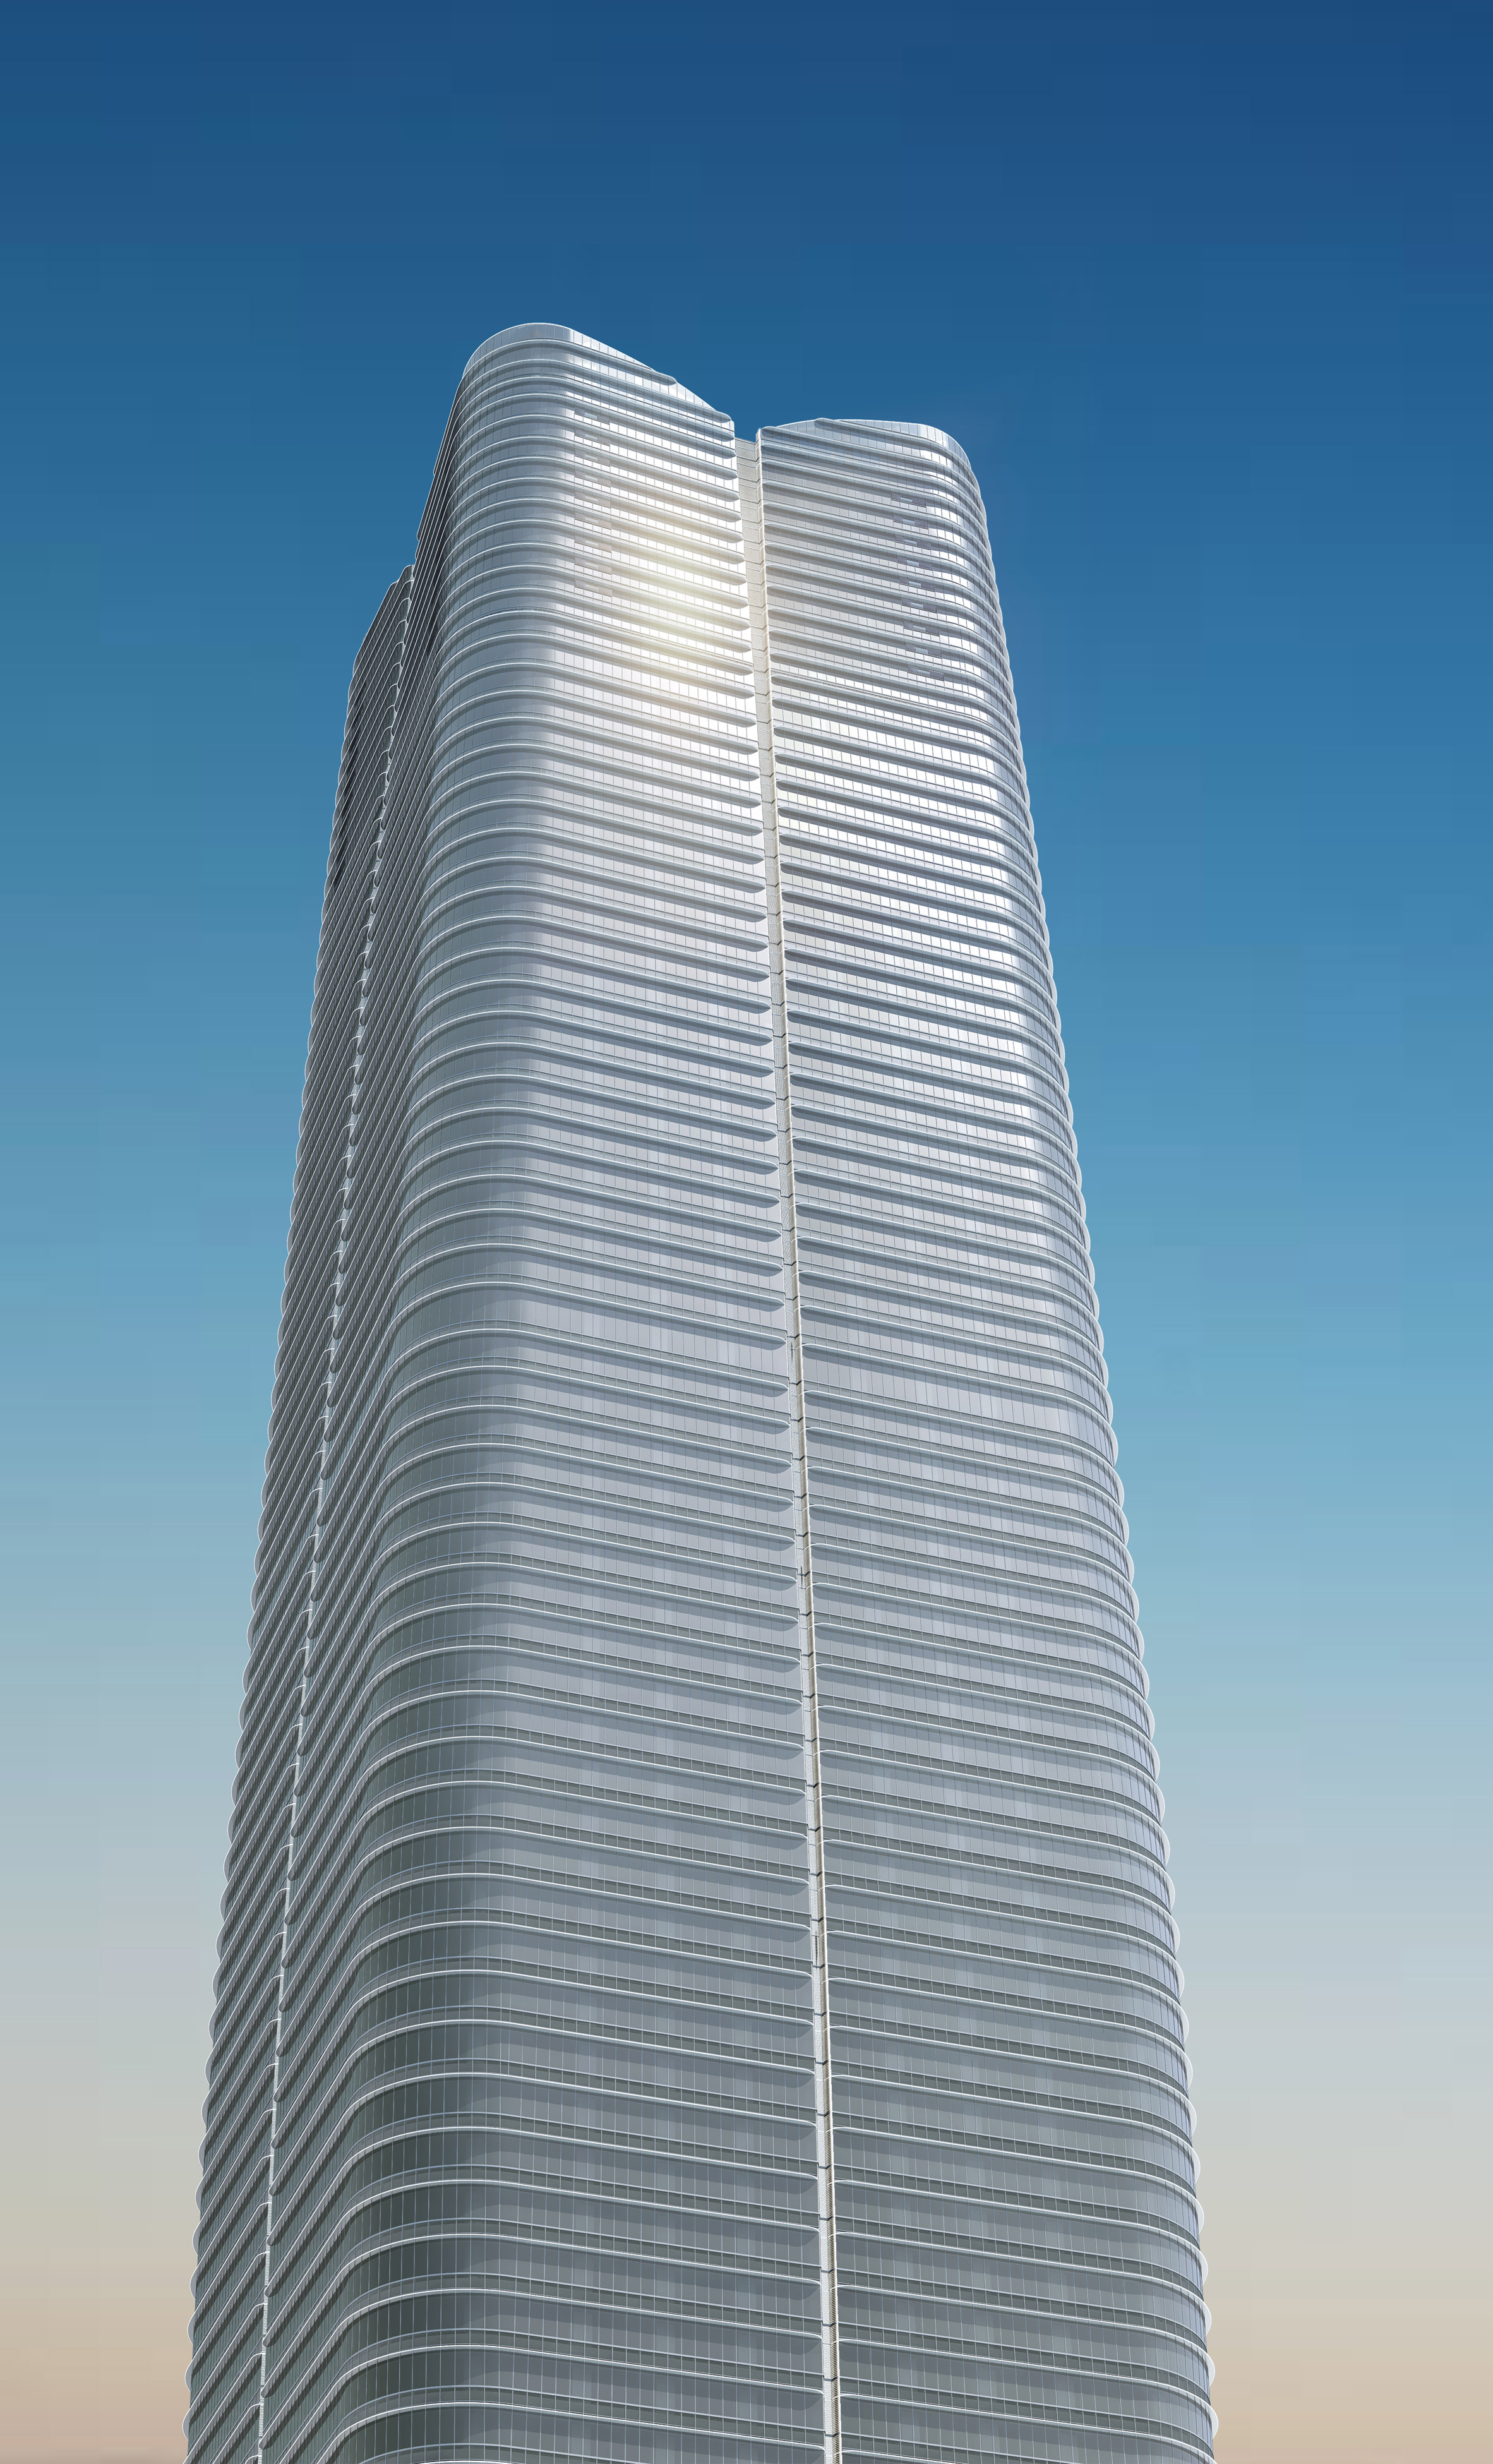 Pelli Clarke Pelli reveals Japan's tallest skyscraper in Tokyo